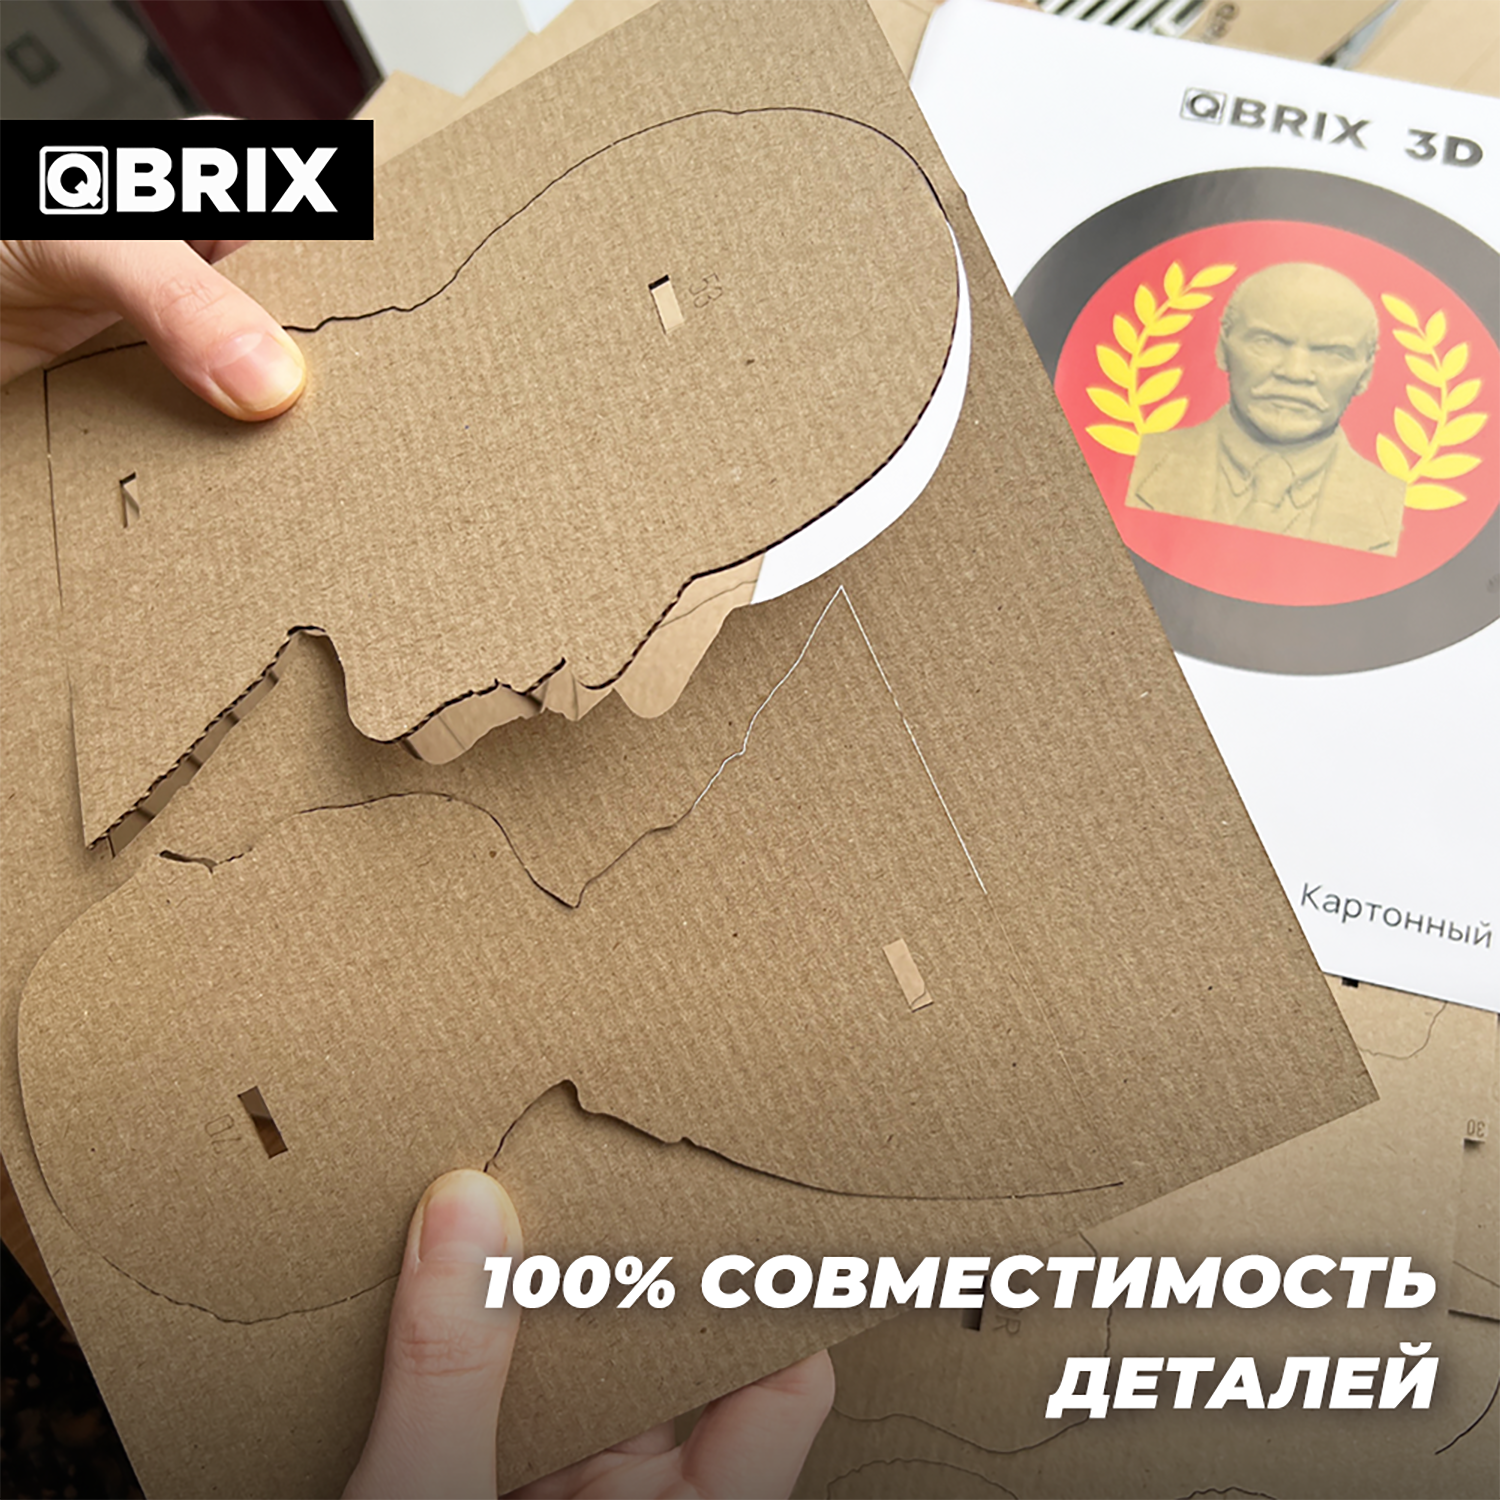 Конструктор QBRIX 3D картонный Ленин 20031 20031 - фото 5